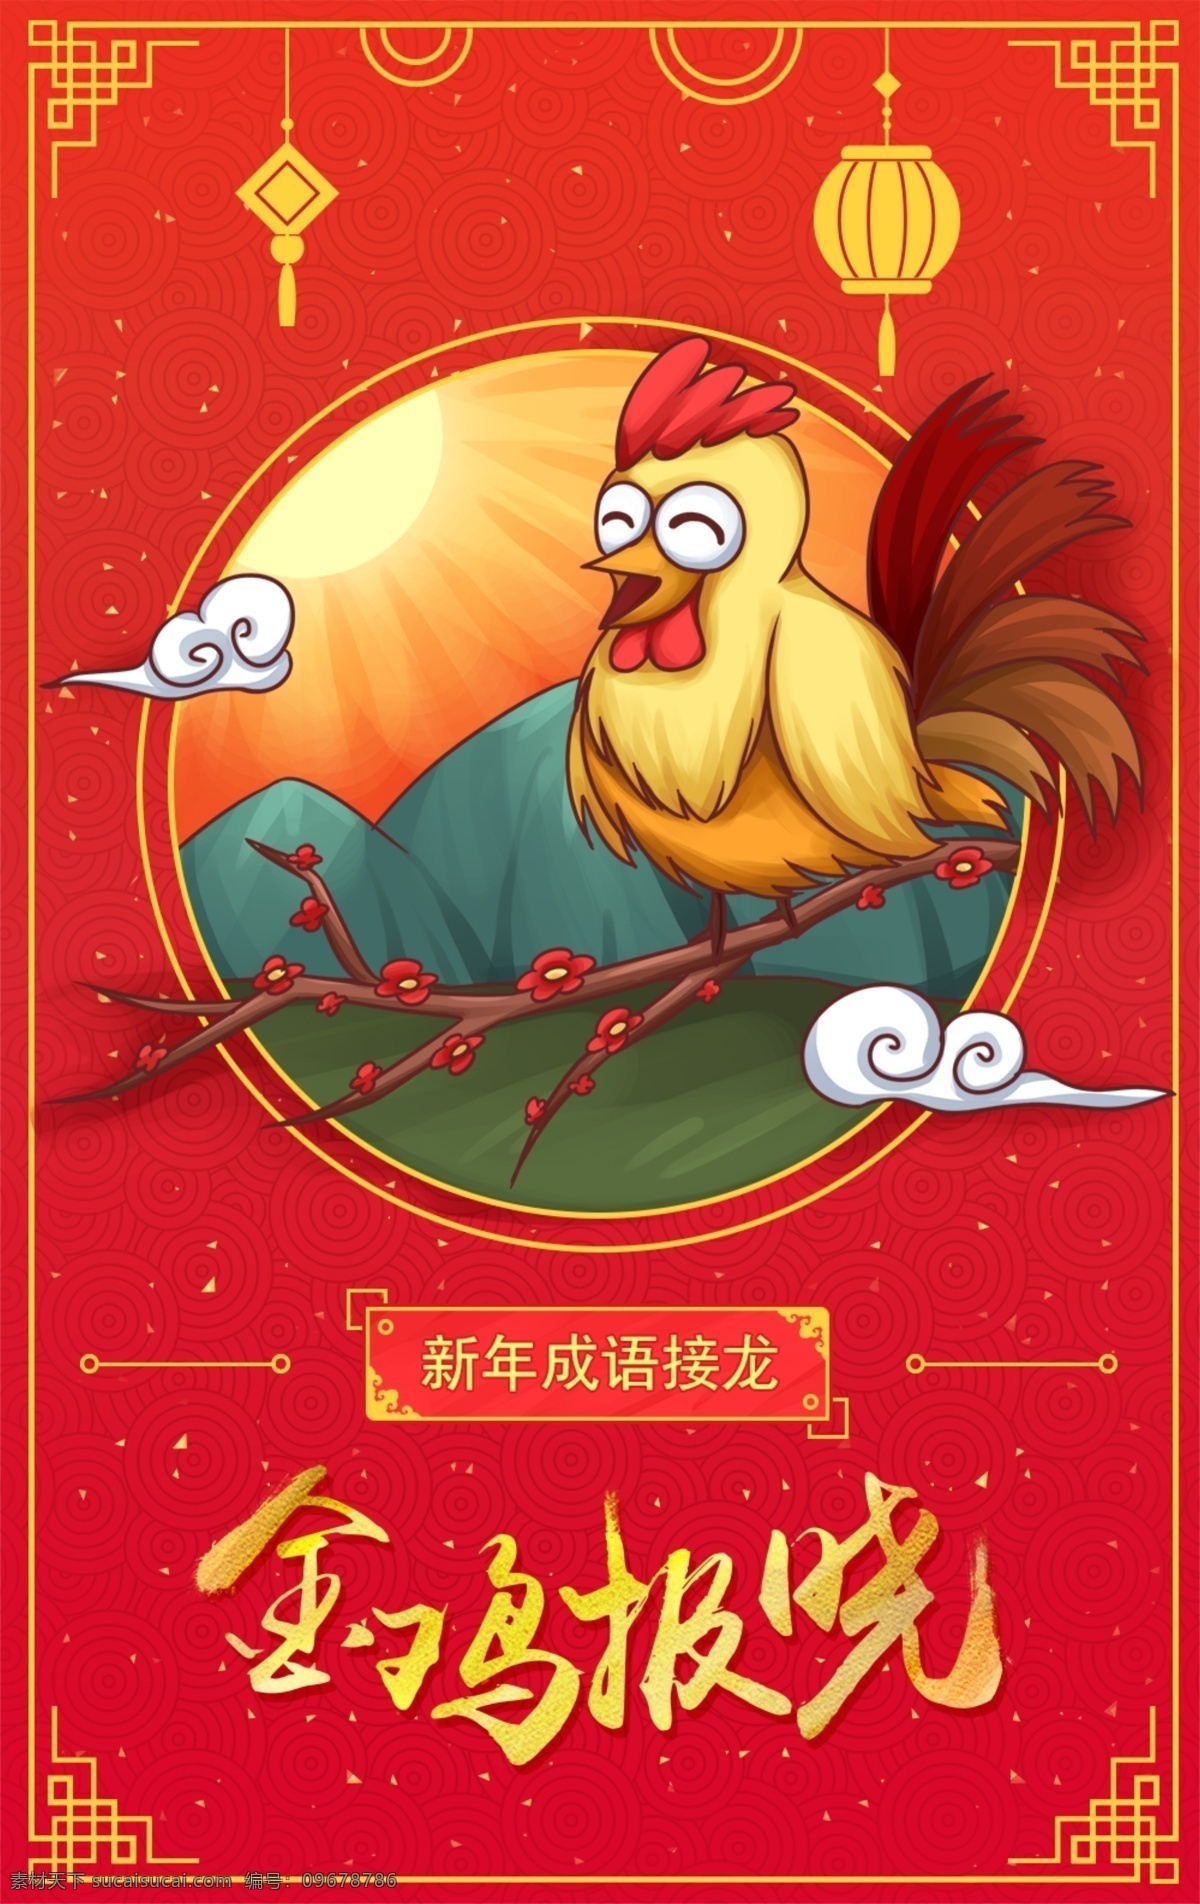 金鸡 报晓 手绘 海报 插画 鸡年 2017 新年 成语 广告